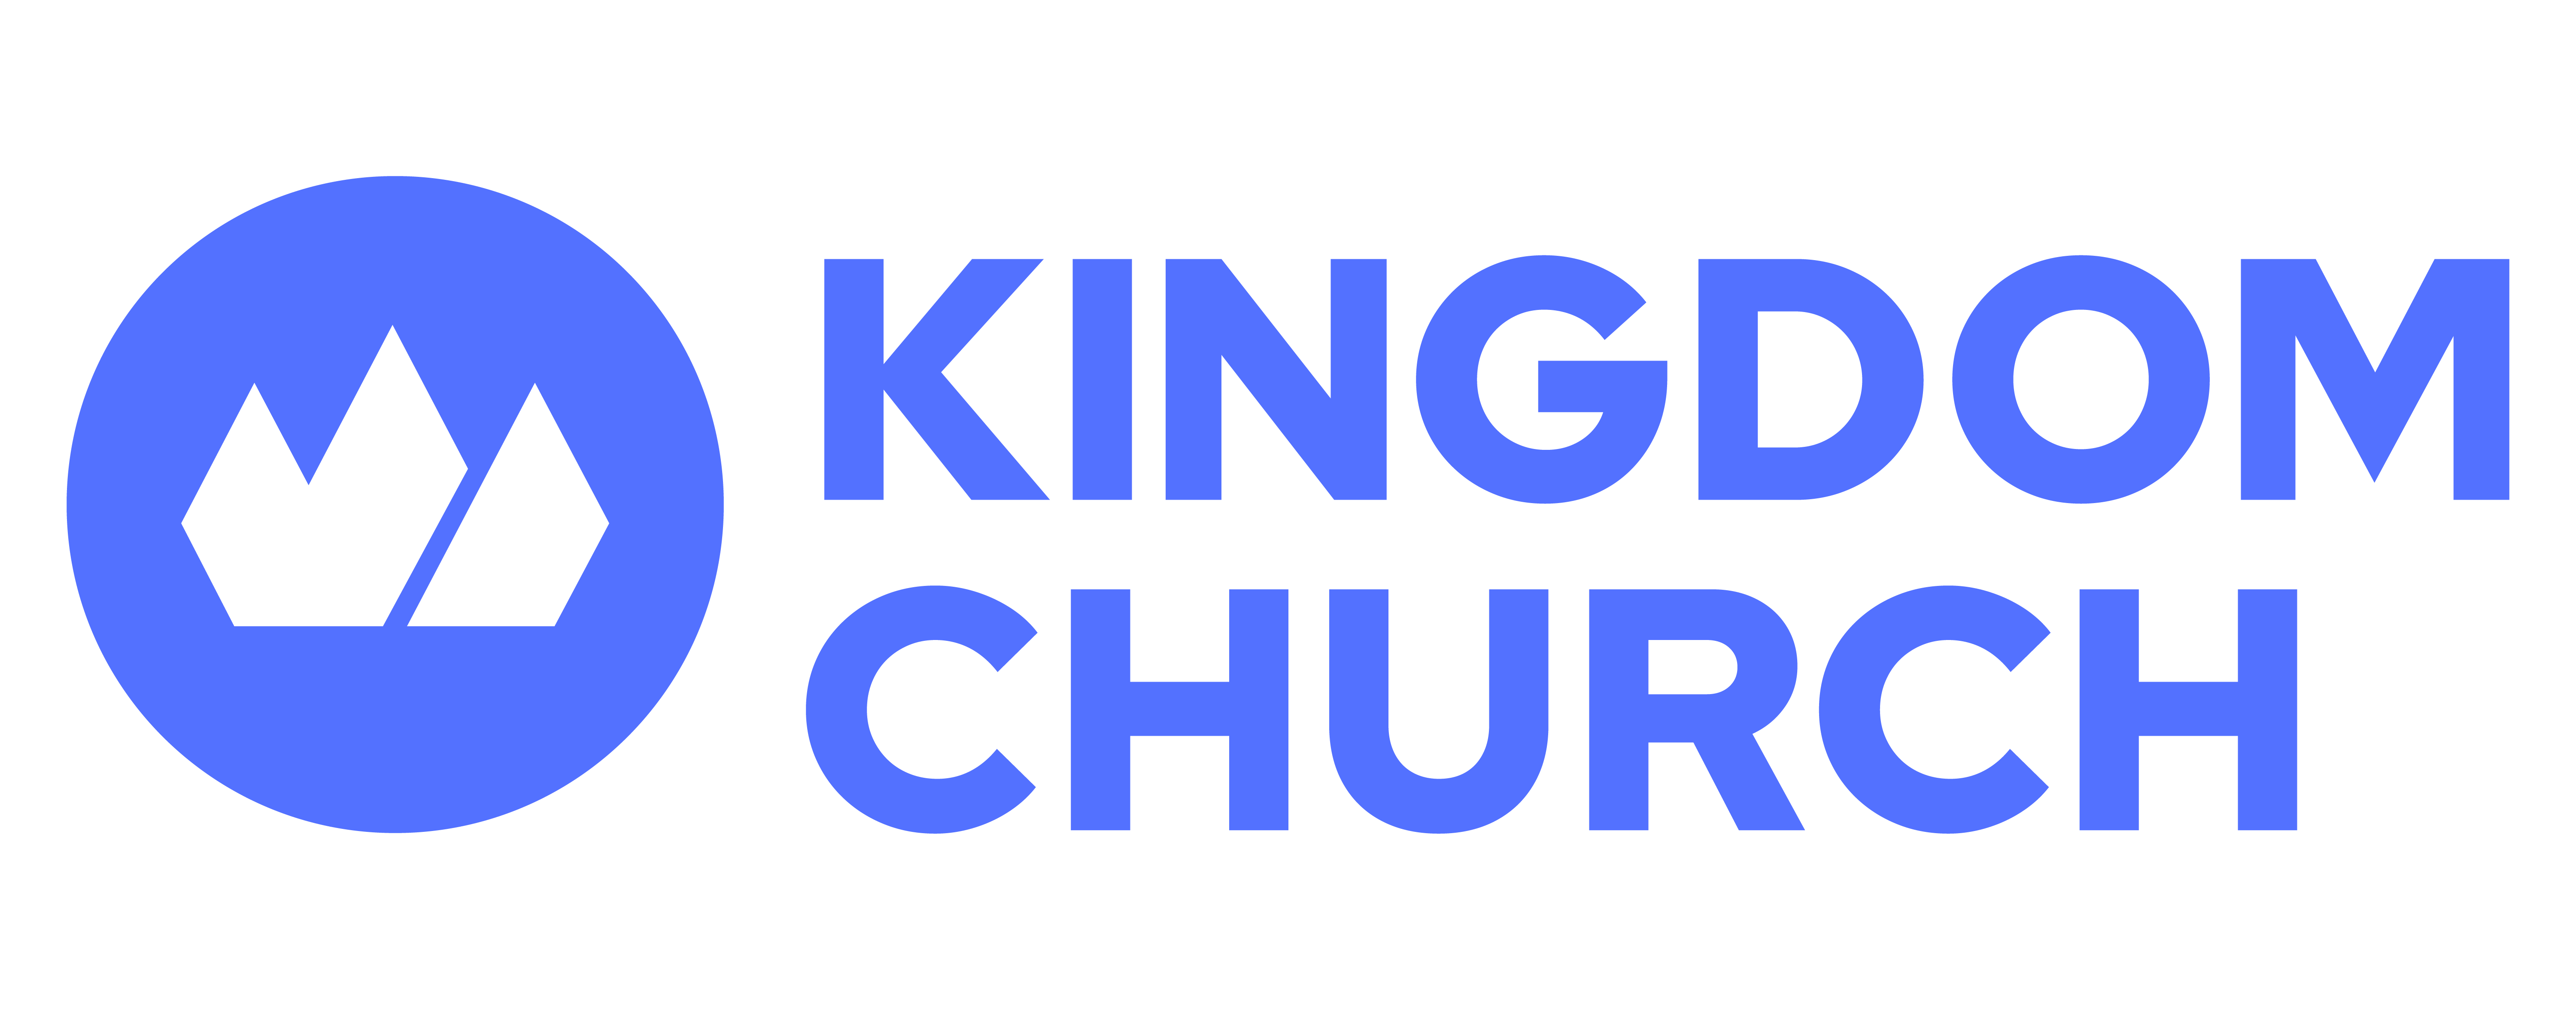 Kingdom Church